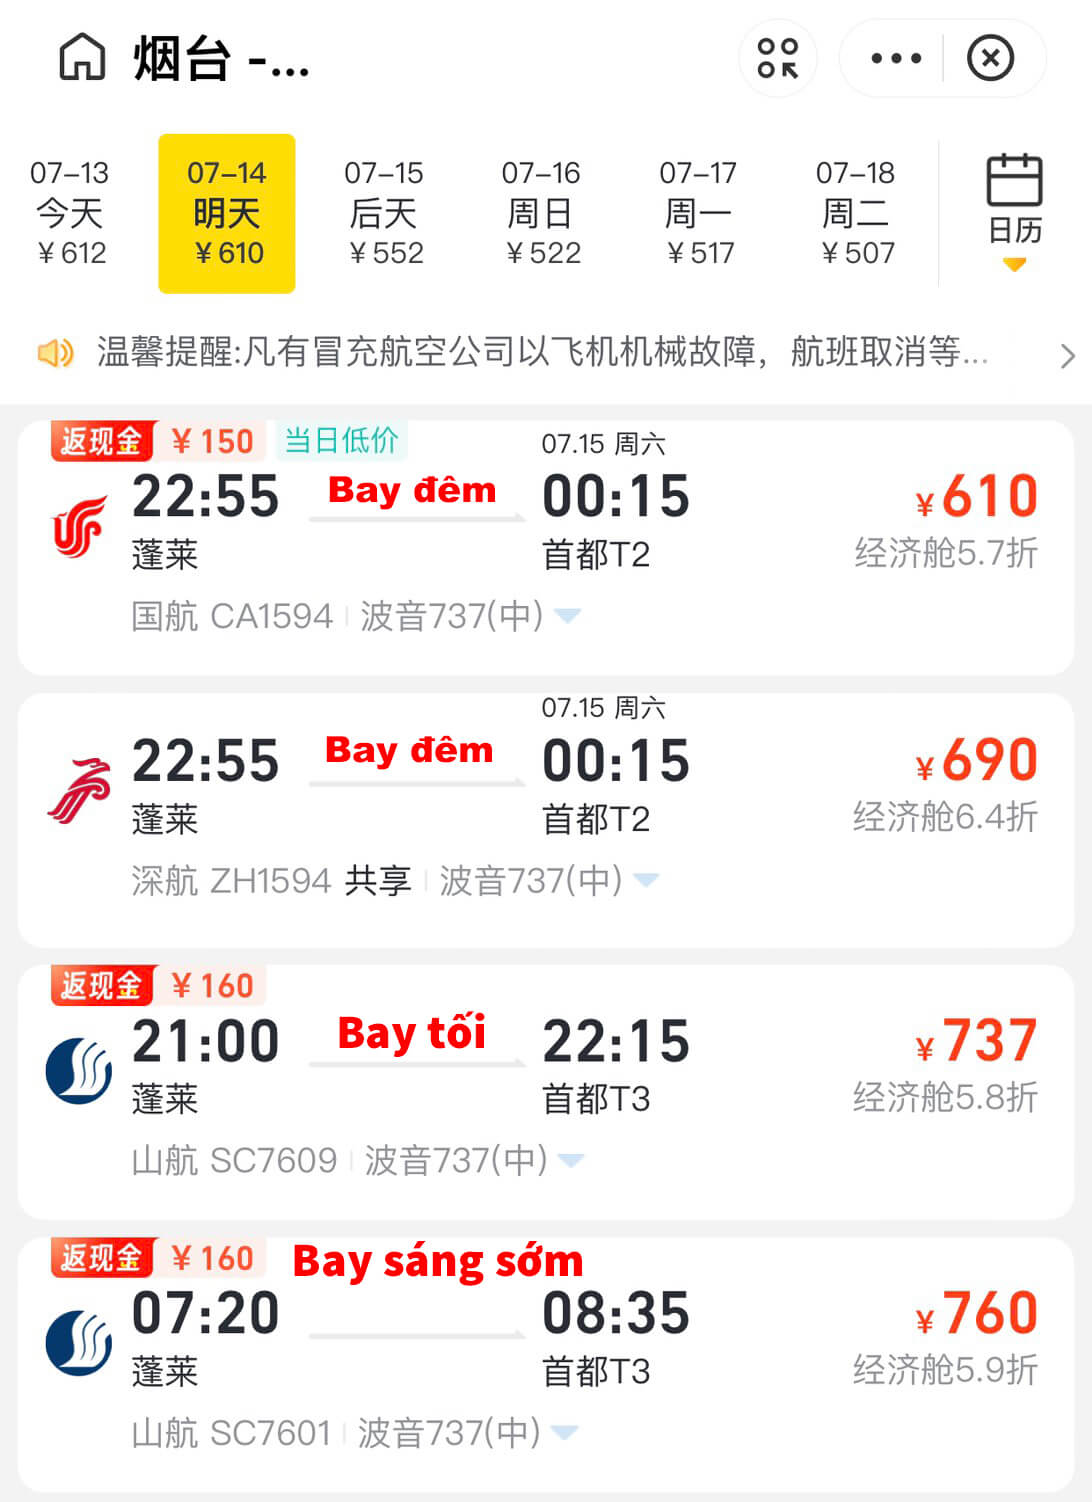 Hướng dẫn mua vé máy bay Trung Quốc bằng Alipay 7